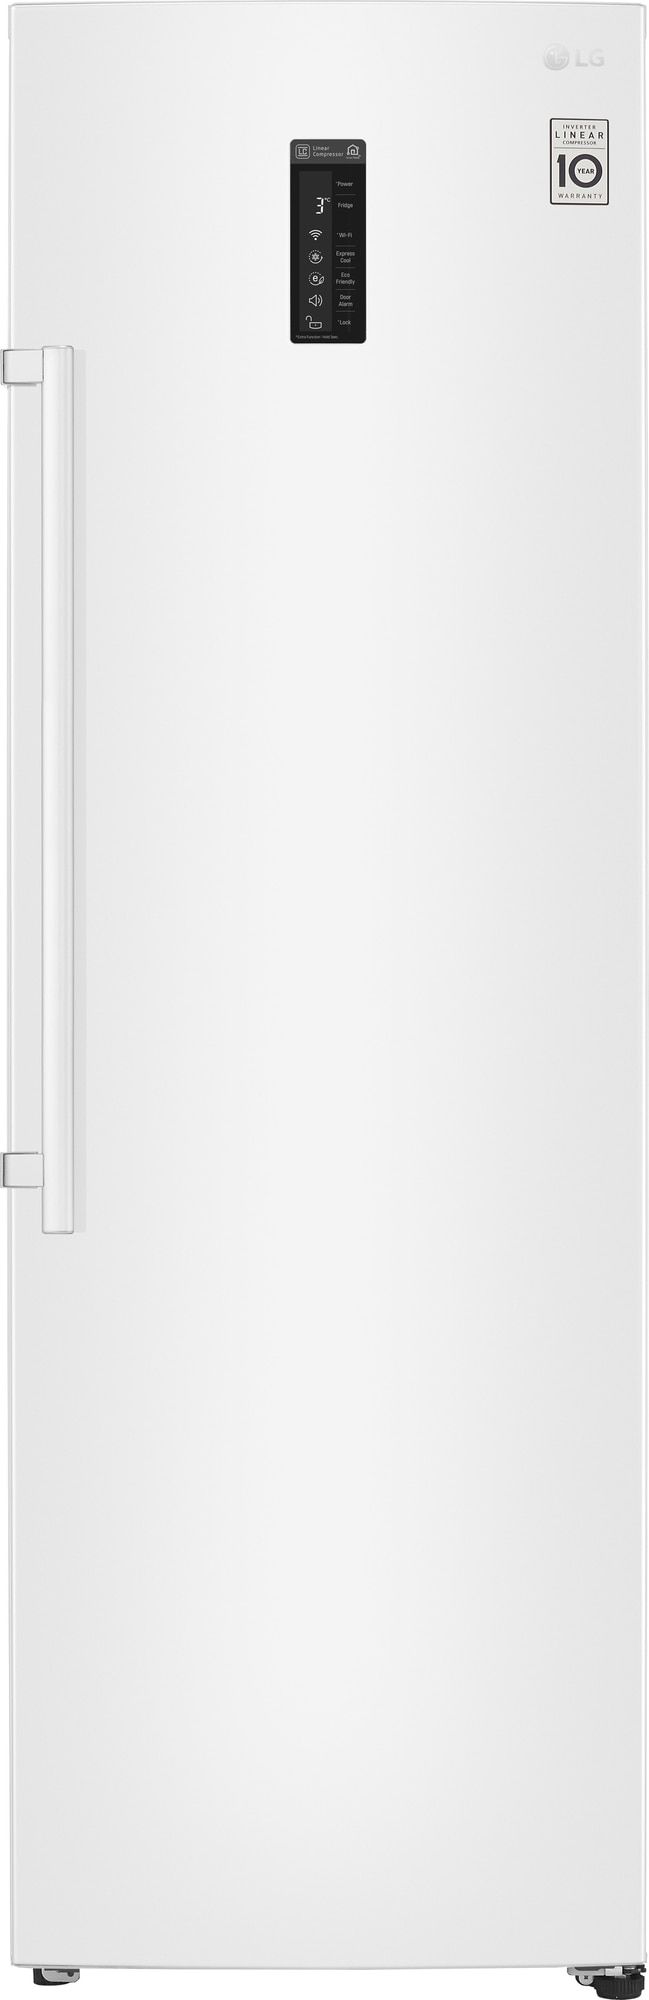 LG køleskab KL5241SWJZ (hvid) (8806098298020)